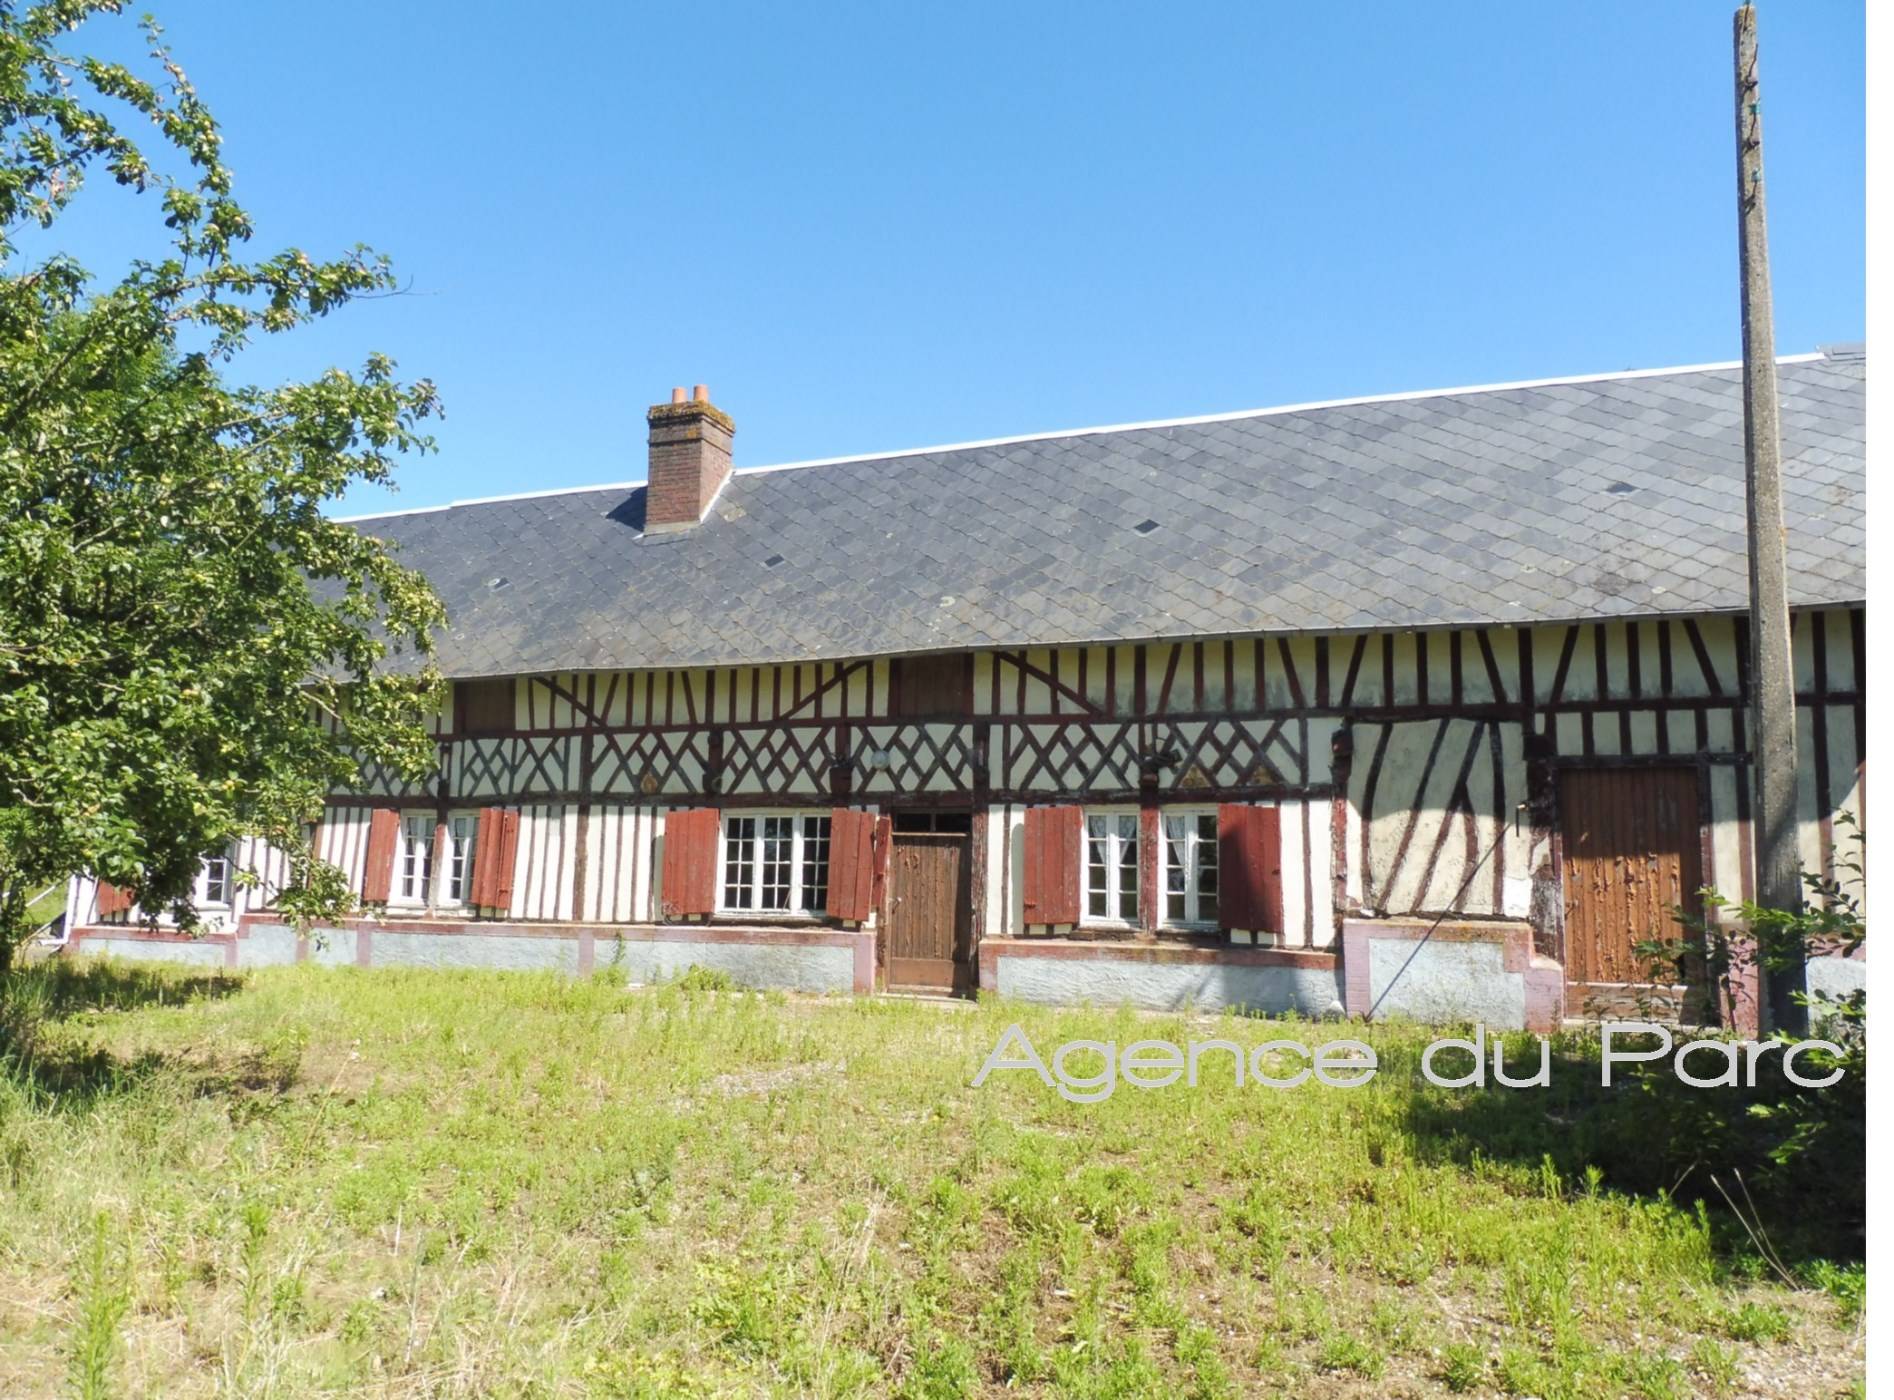 Vente d'une maison normande à réhabiliter, sur 4300 m² env de terrain, campagne Caudebec en Caux, en Normandie